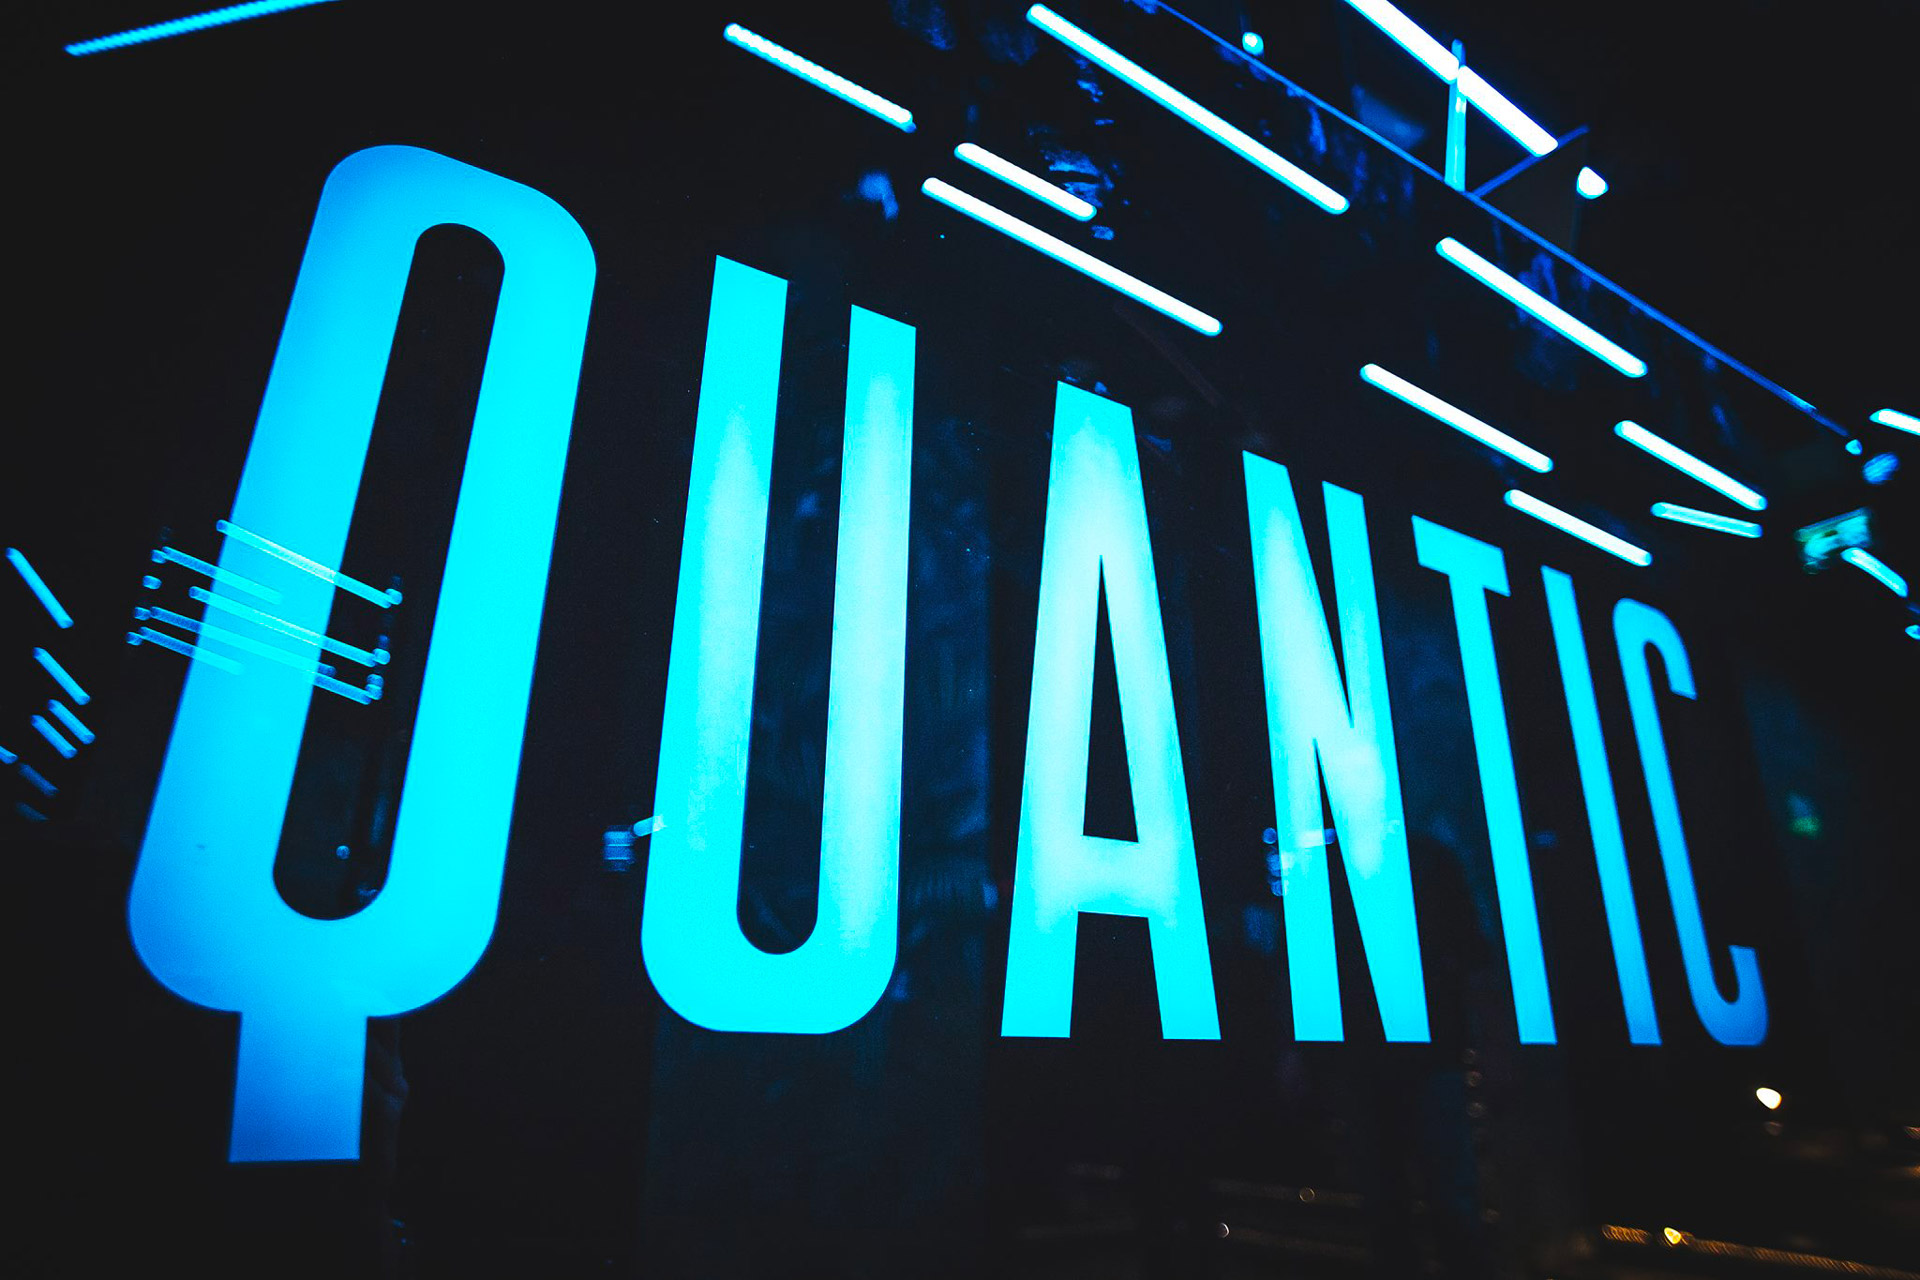 Quantic – Milano